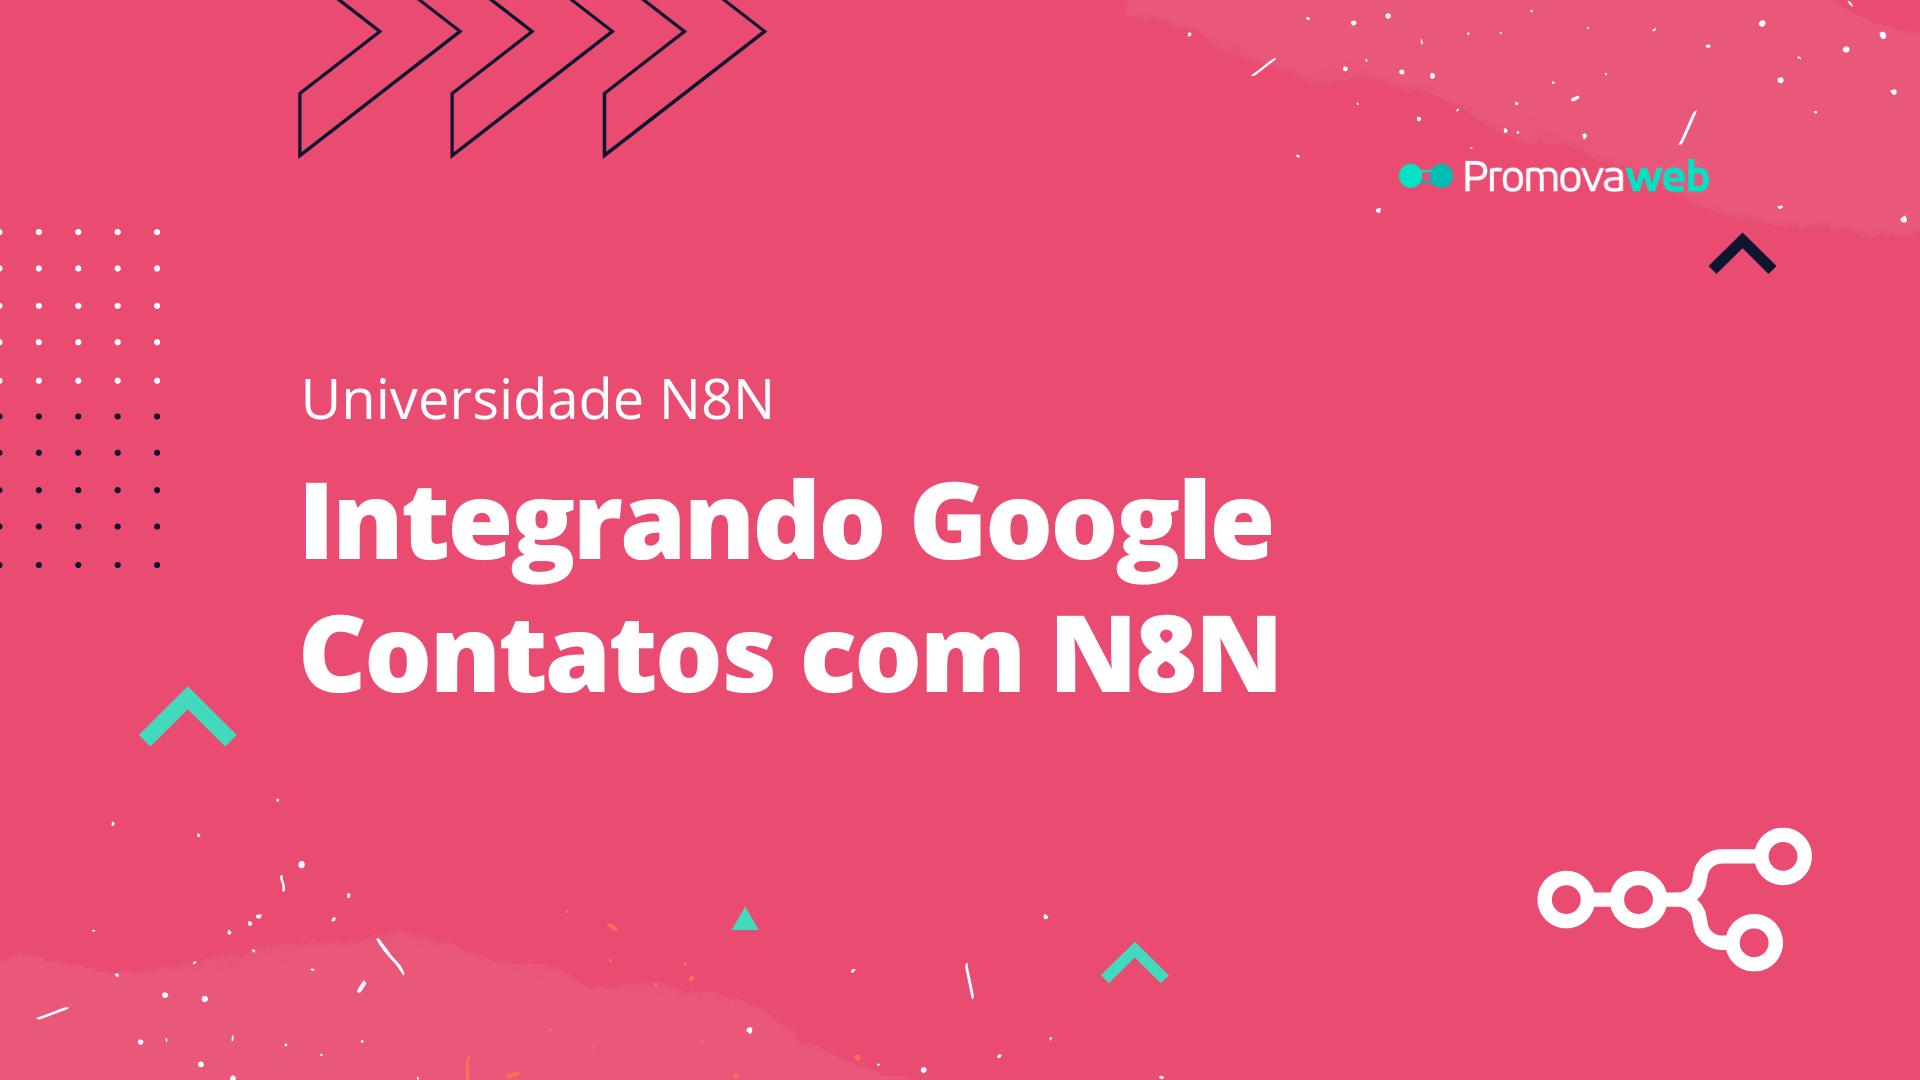 Integrando Google Contatos com N8N